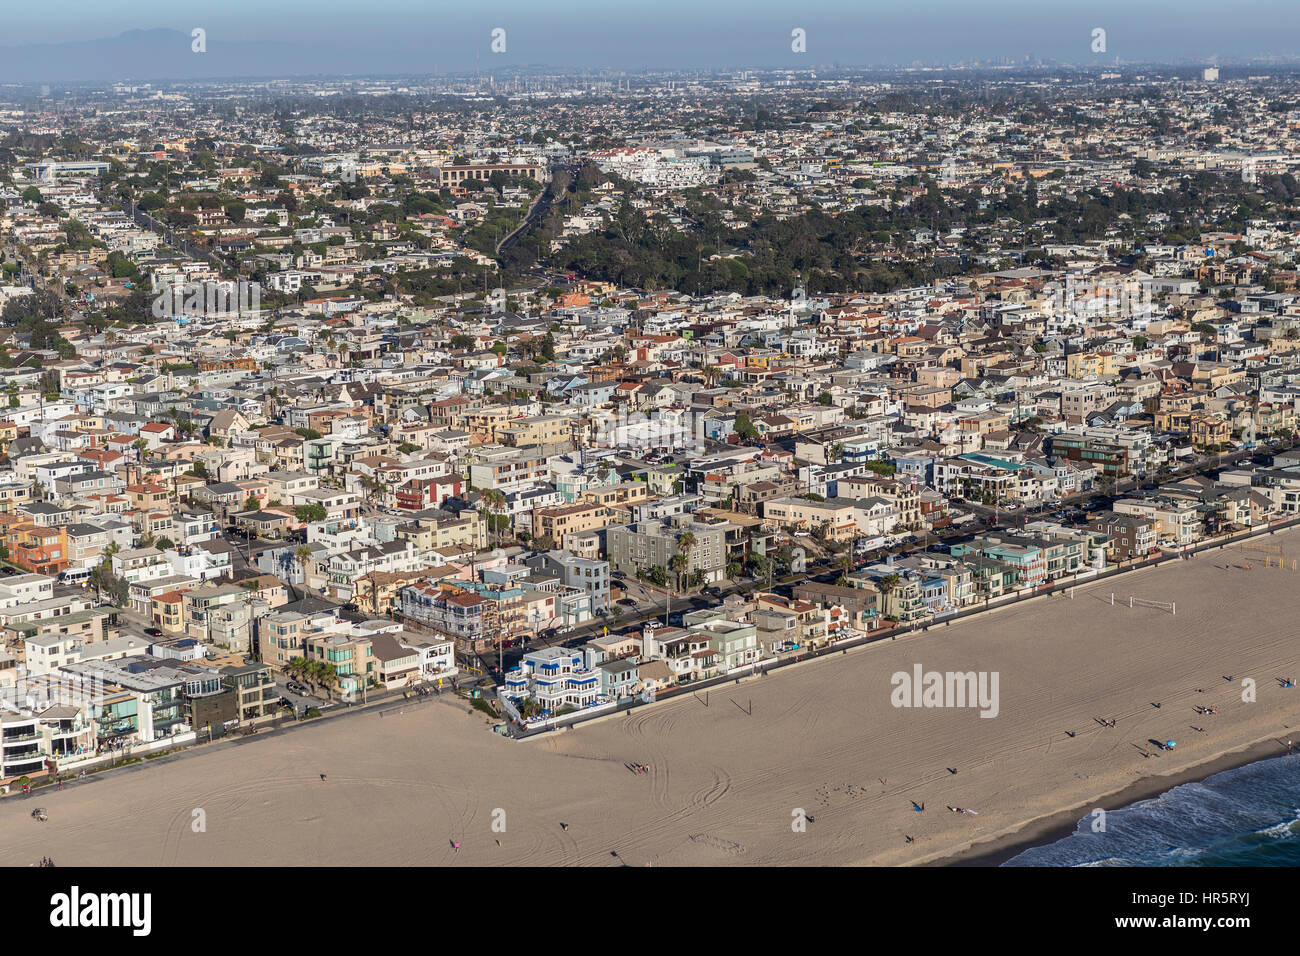 Hermosa Beach, Kalifornien, USA - 16. August 2016: Am Nachmittag Luftaufnahme von Hermosa Beach und Manhattan Beach Küstengemeinden in Southern California Stockfoto